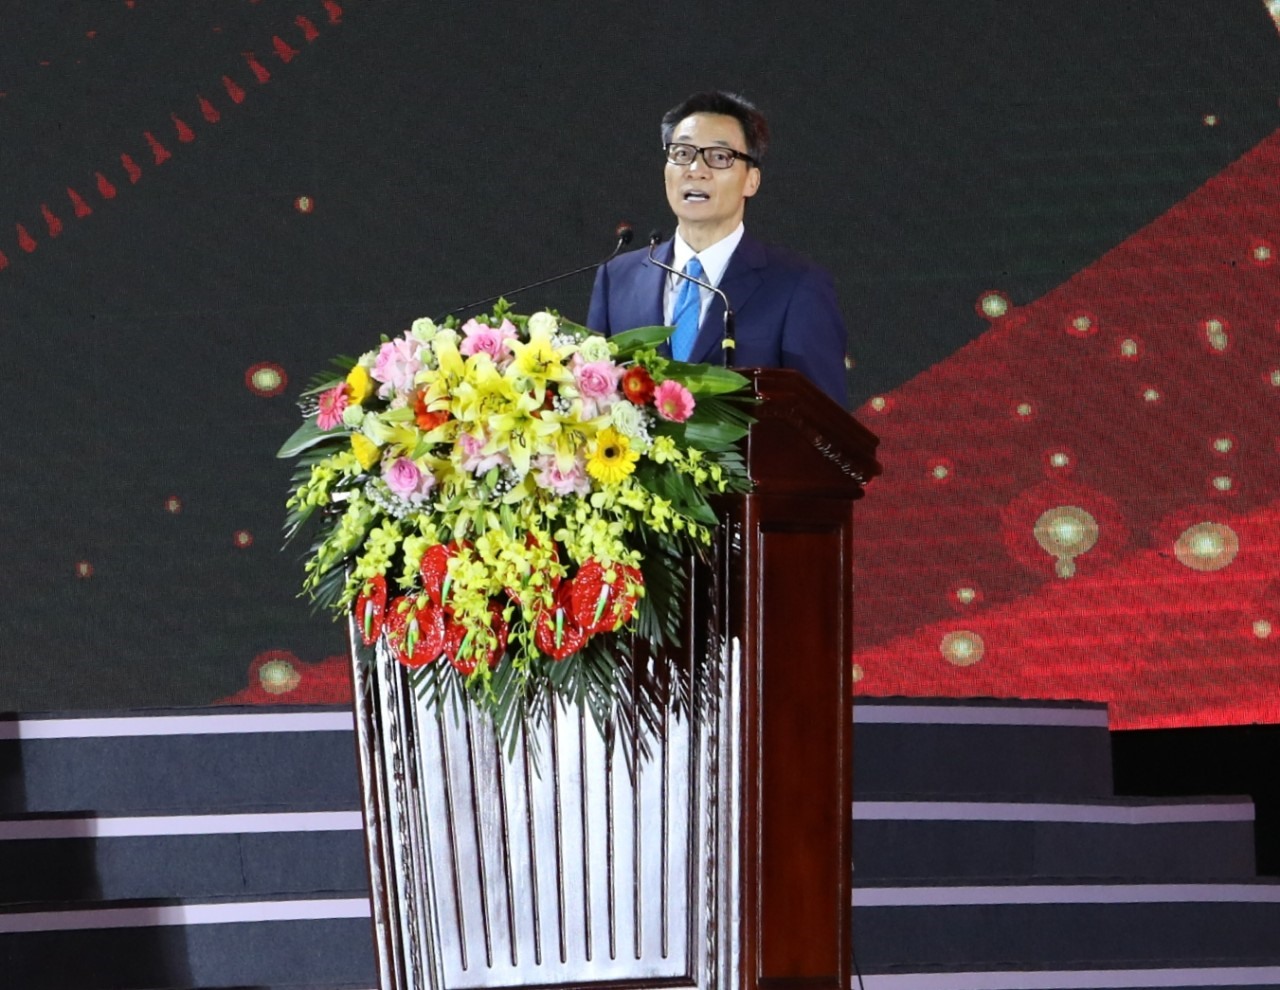 Phó Thủ tướng Chính phủ Vũ Đức Đam phát biểu tại Lễ khai mạc “Festival Ninh Bình 2022 - Tràng An kết nối di sản”. Ảnh: Nguyễn Trường